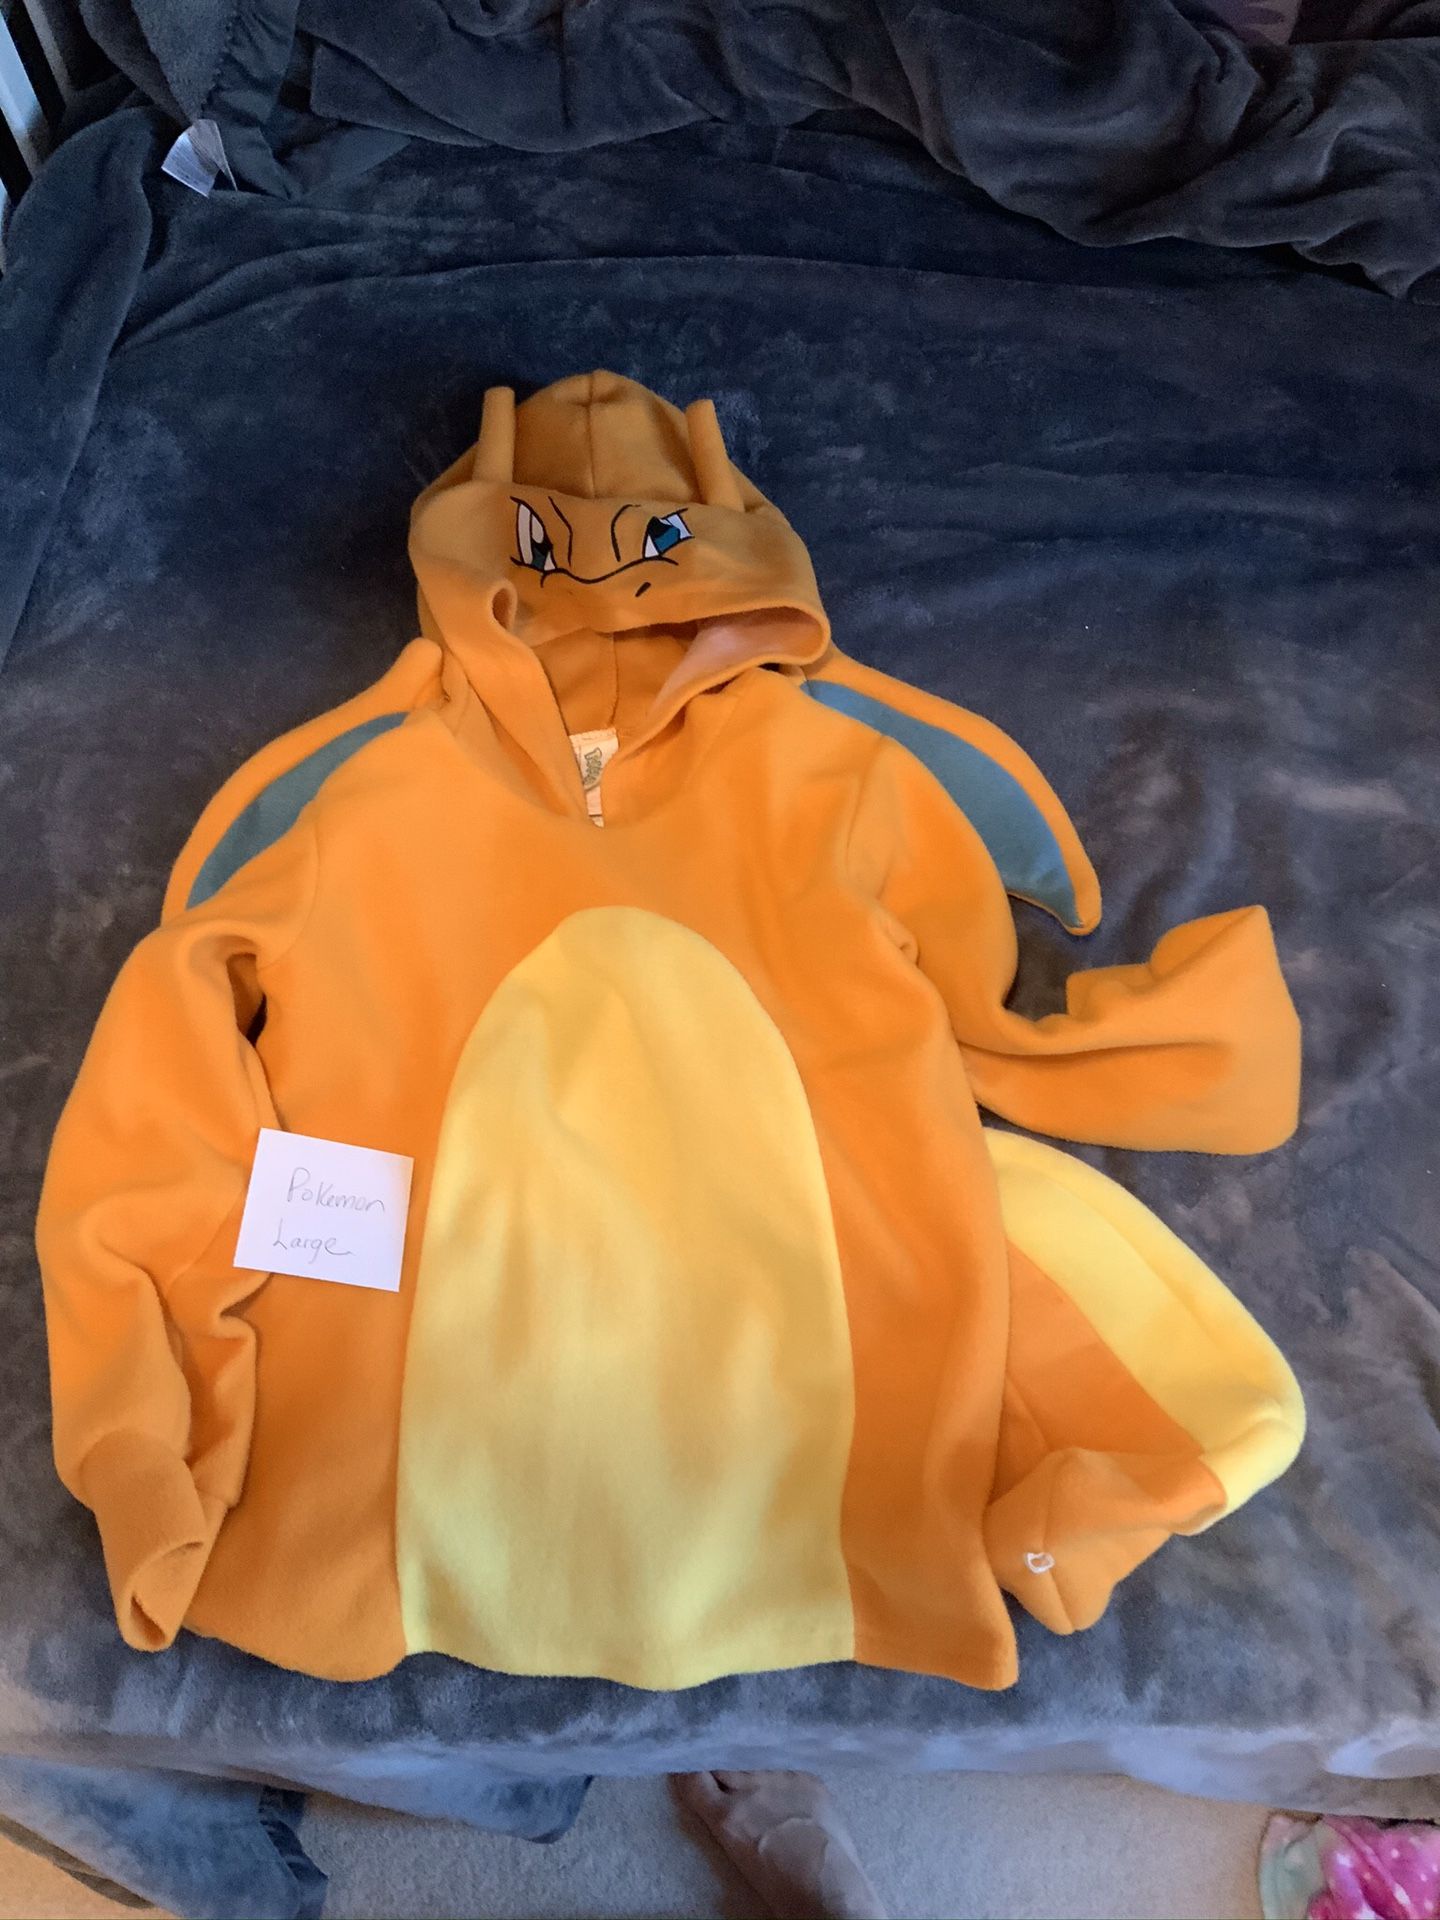 Pokémon hooded sweatshirt / costume, Charizard